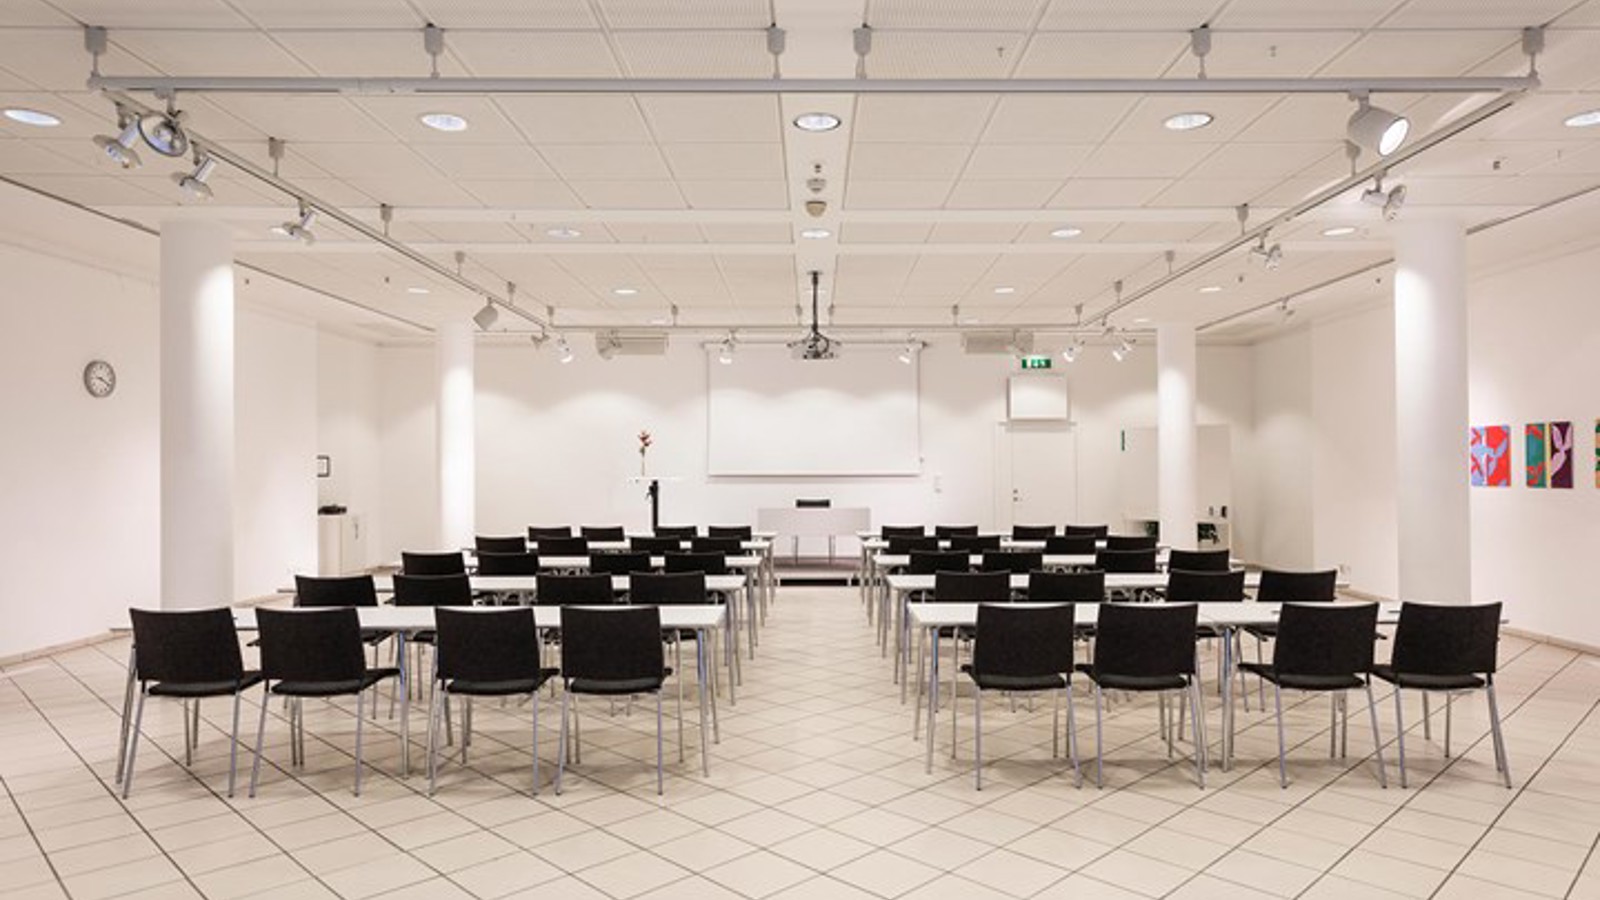 Konferenslokal med vita väggar, vitt golv och svarta stolar placerade i biosittning